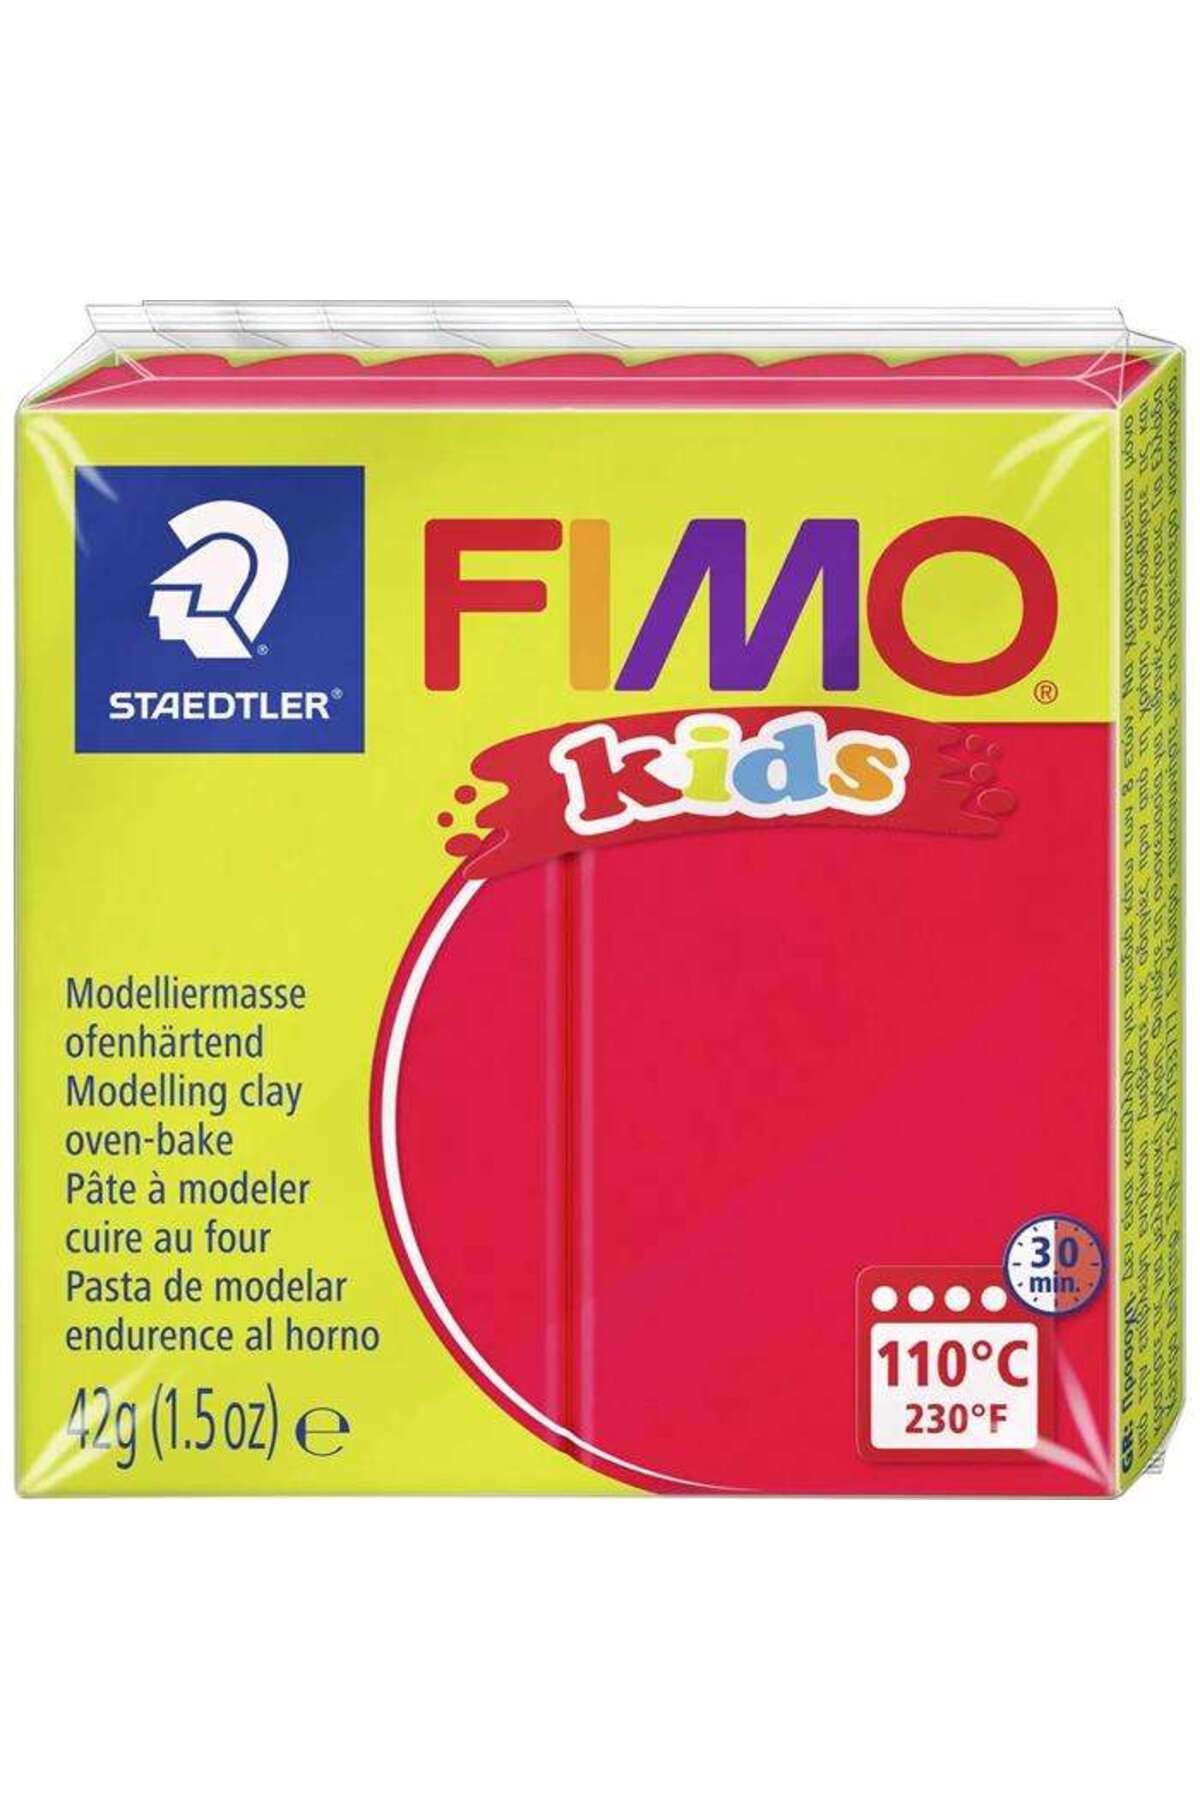 Staedtler Fimo Kids Modelleme Kili 42 g Red Glitter 212